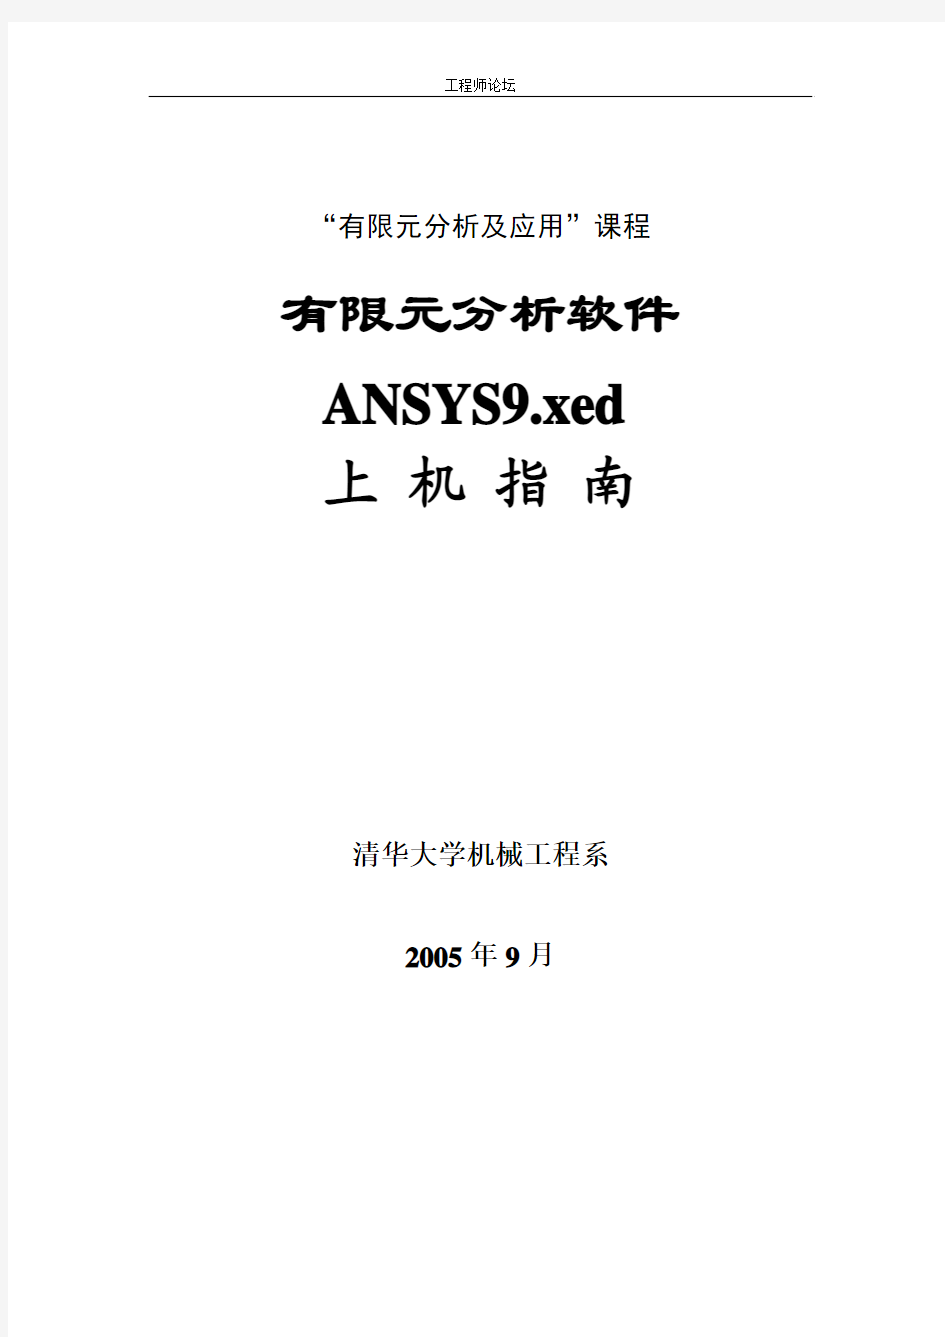 有限元分析软件ANSYS9.xed上机指南